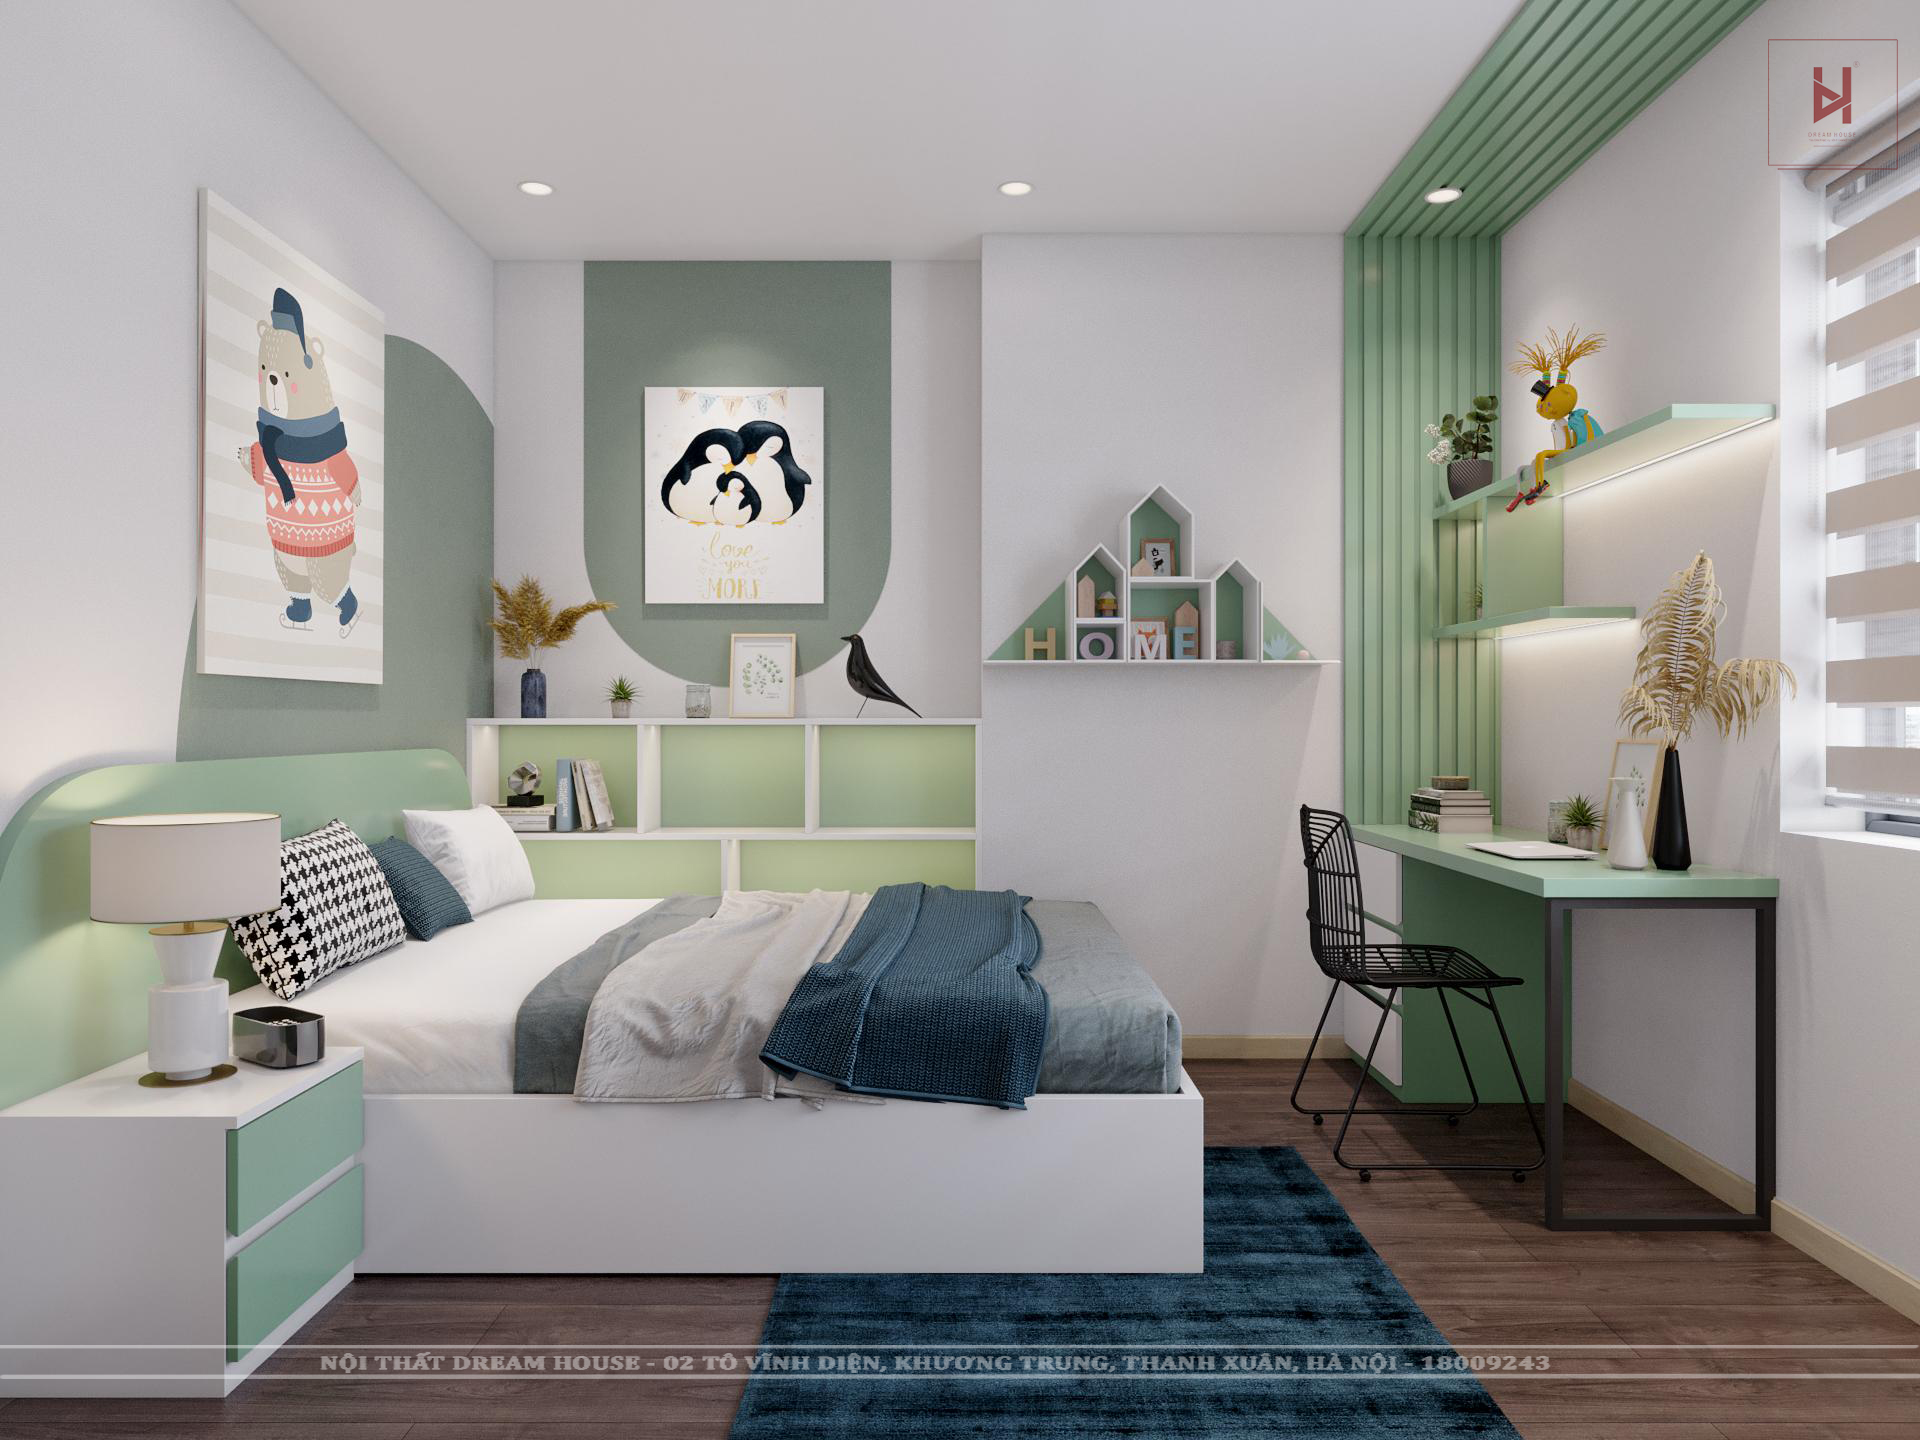 Phòng ngủ bé xanh lá cây với các đồ nội thất đẹp, tươi sáng sẽ giúp bé được nghỉ ngơi và phát triển tốt hơn. Màu xanh lá cây là màu sắc mang lại cảm giác yên tĩnh, thư giãn cho bé, giúp bé có giấc ngủ ngon và sâu hơn.